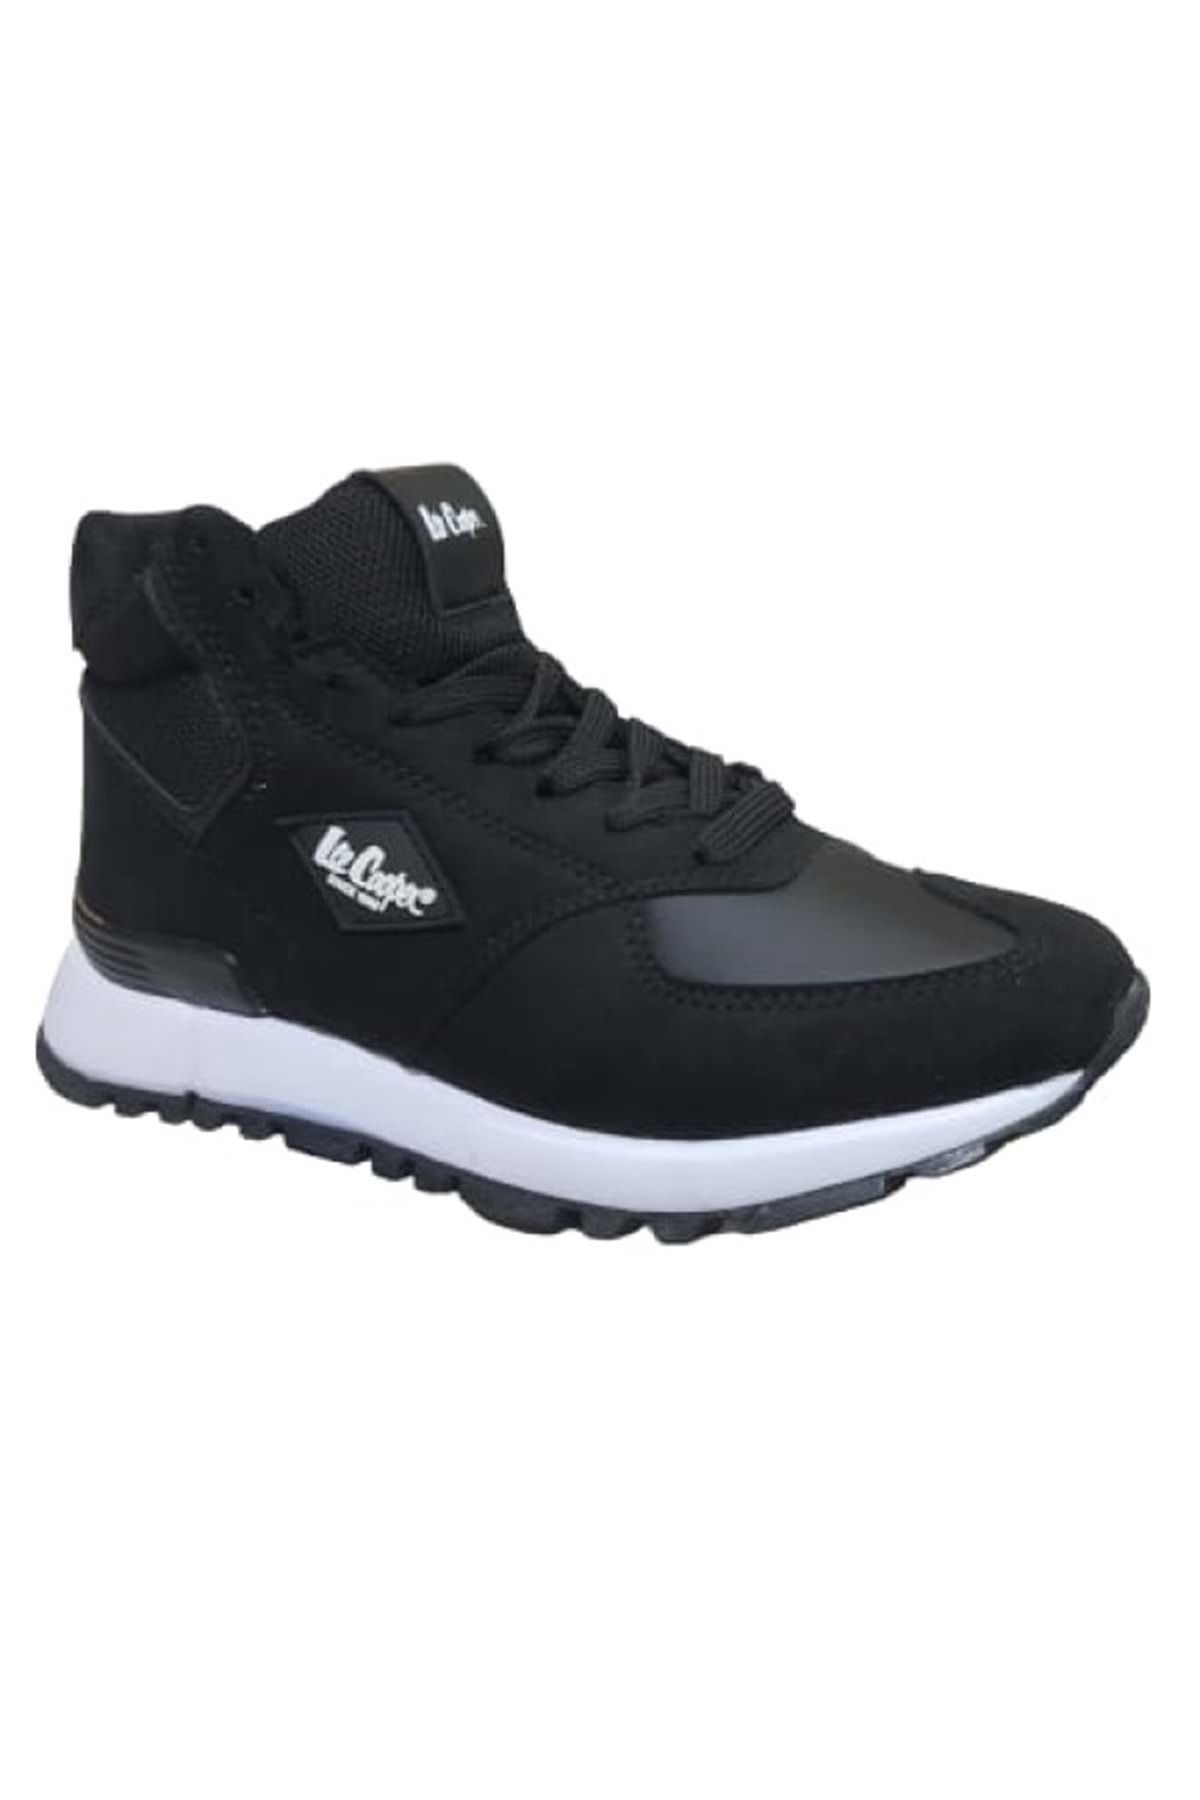 Lee Cooper Lc-31057 Kadın Sneakers Spor Ayakkabı Siyah